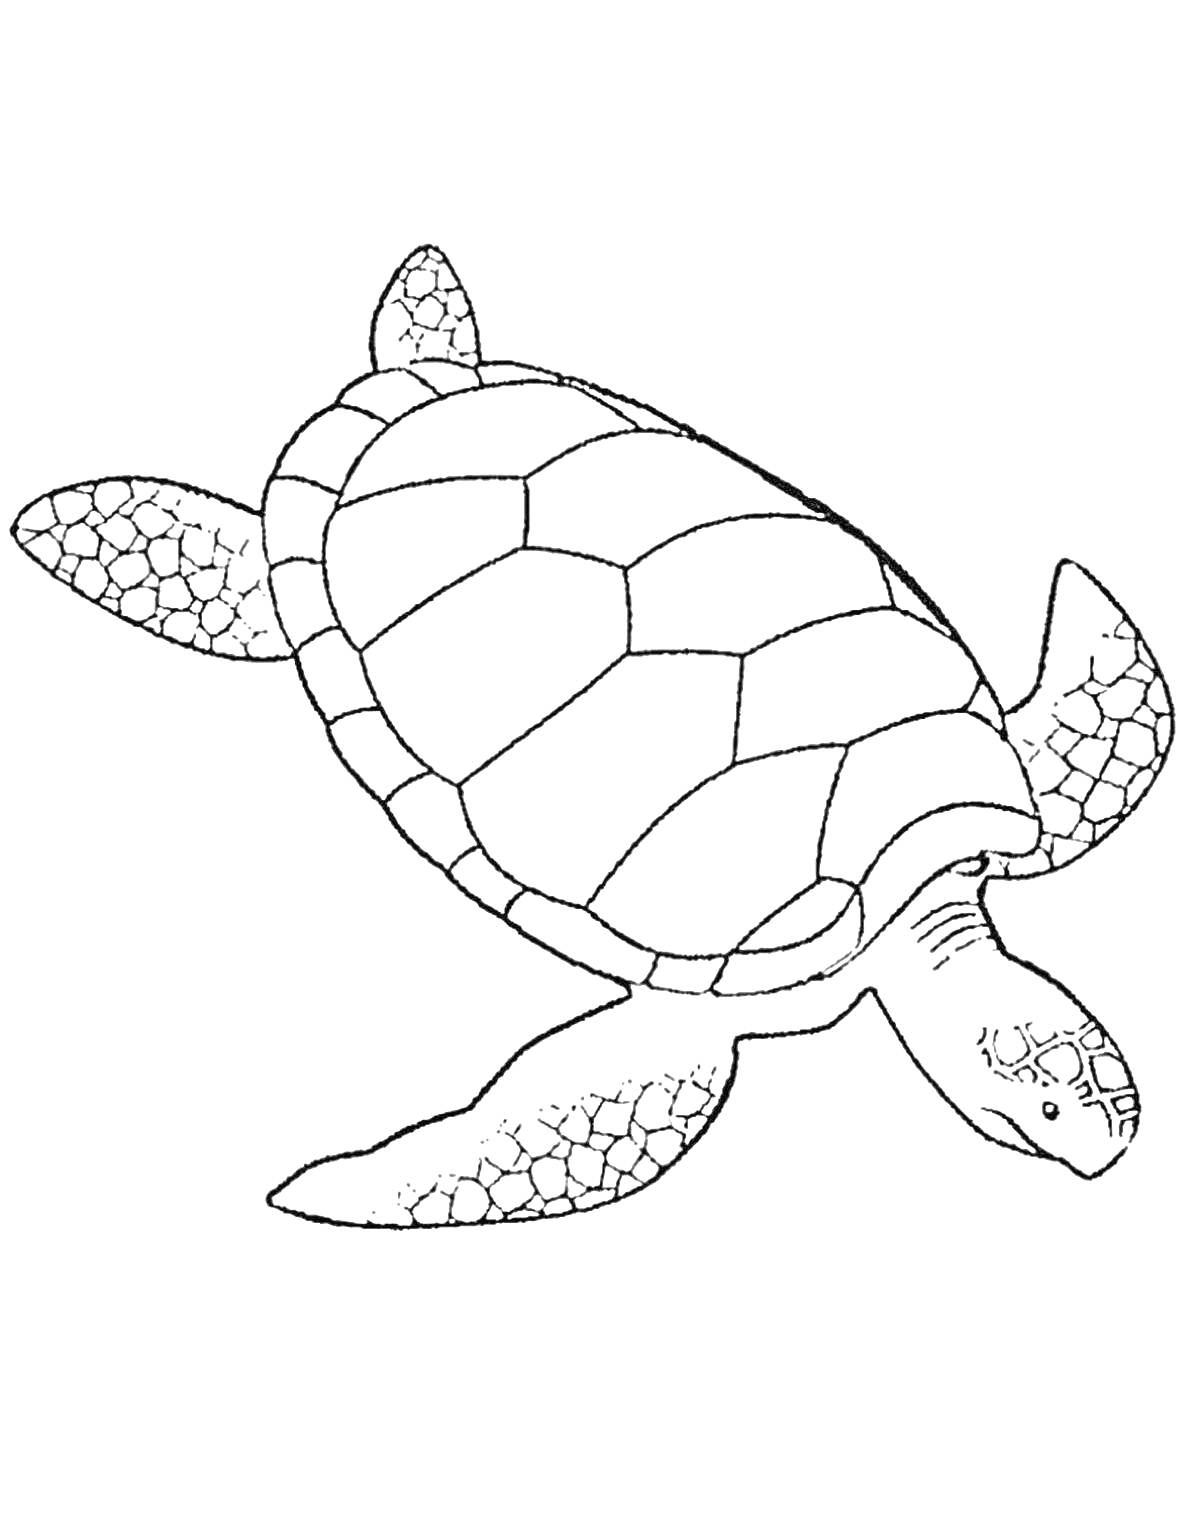 Раскраска Морская черепаха с орнаментом на панцире и плавниках